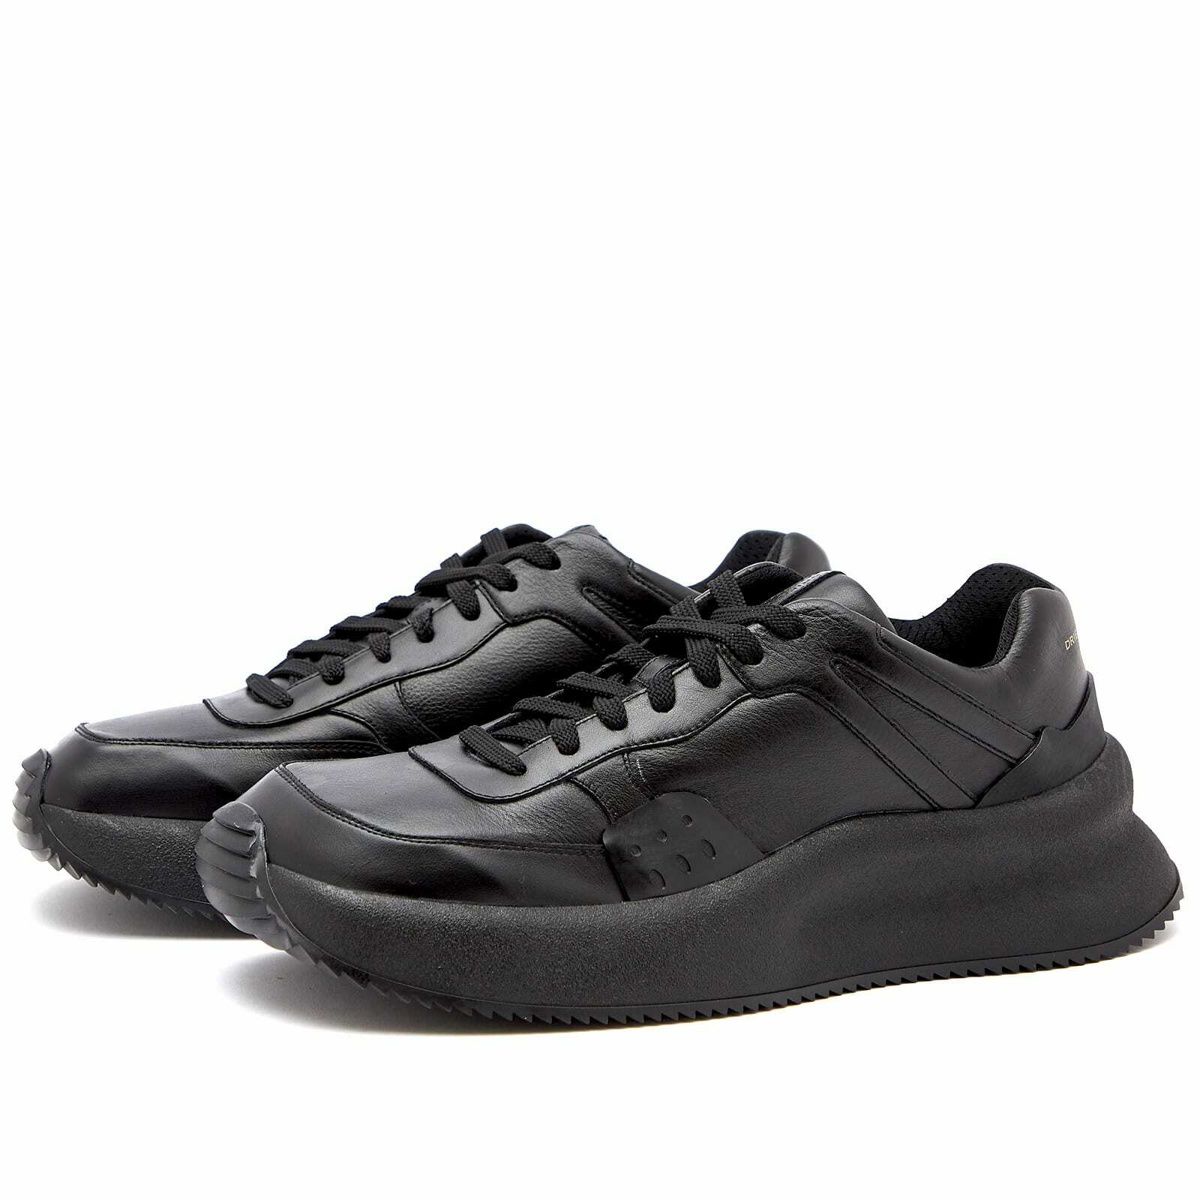 Dries Van Noten Men's Oversized Sneakers in Black Dries Van Noten